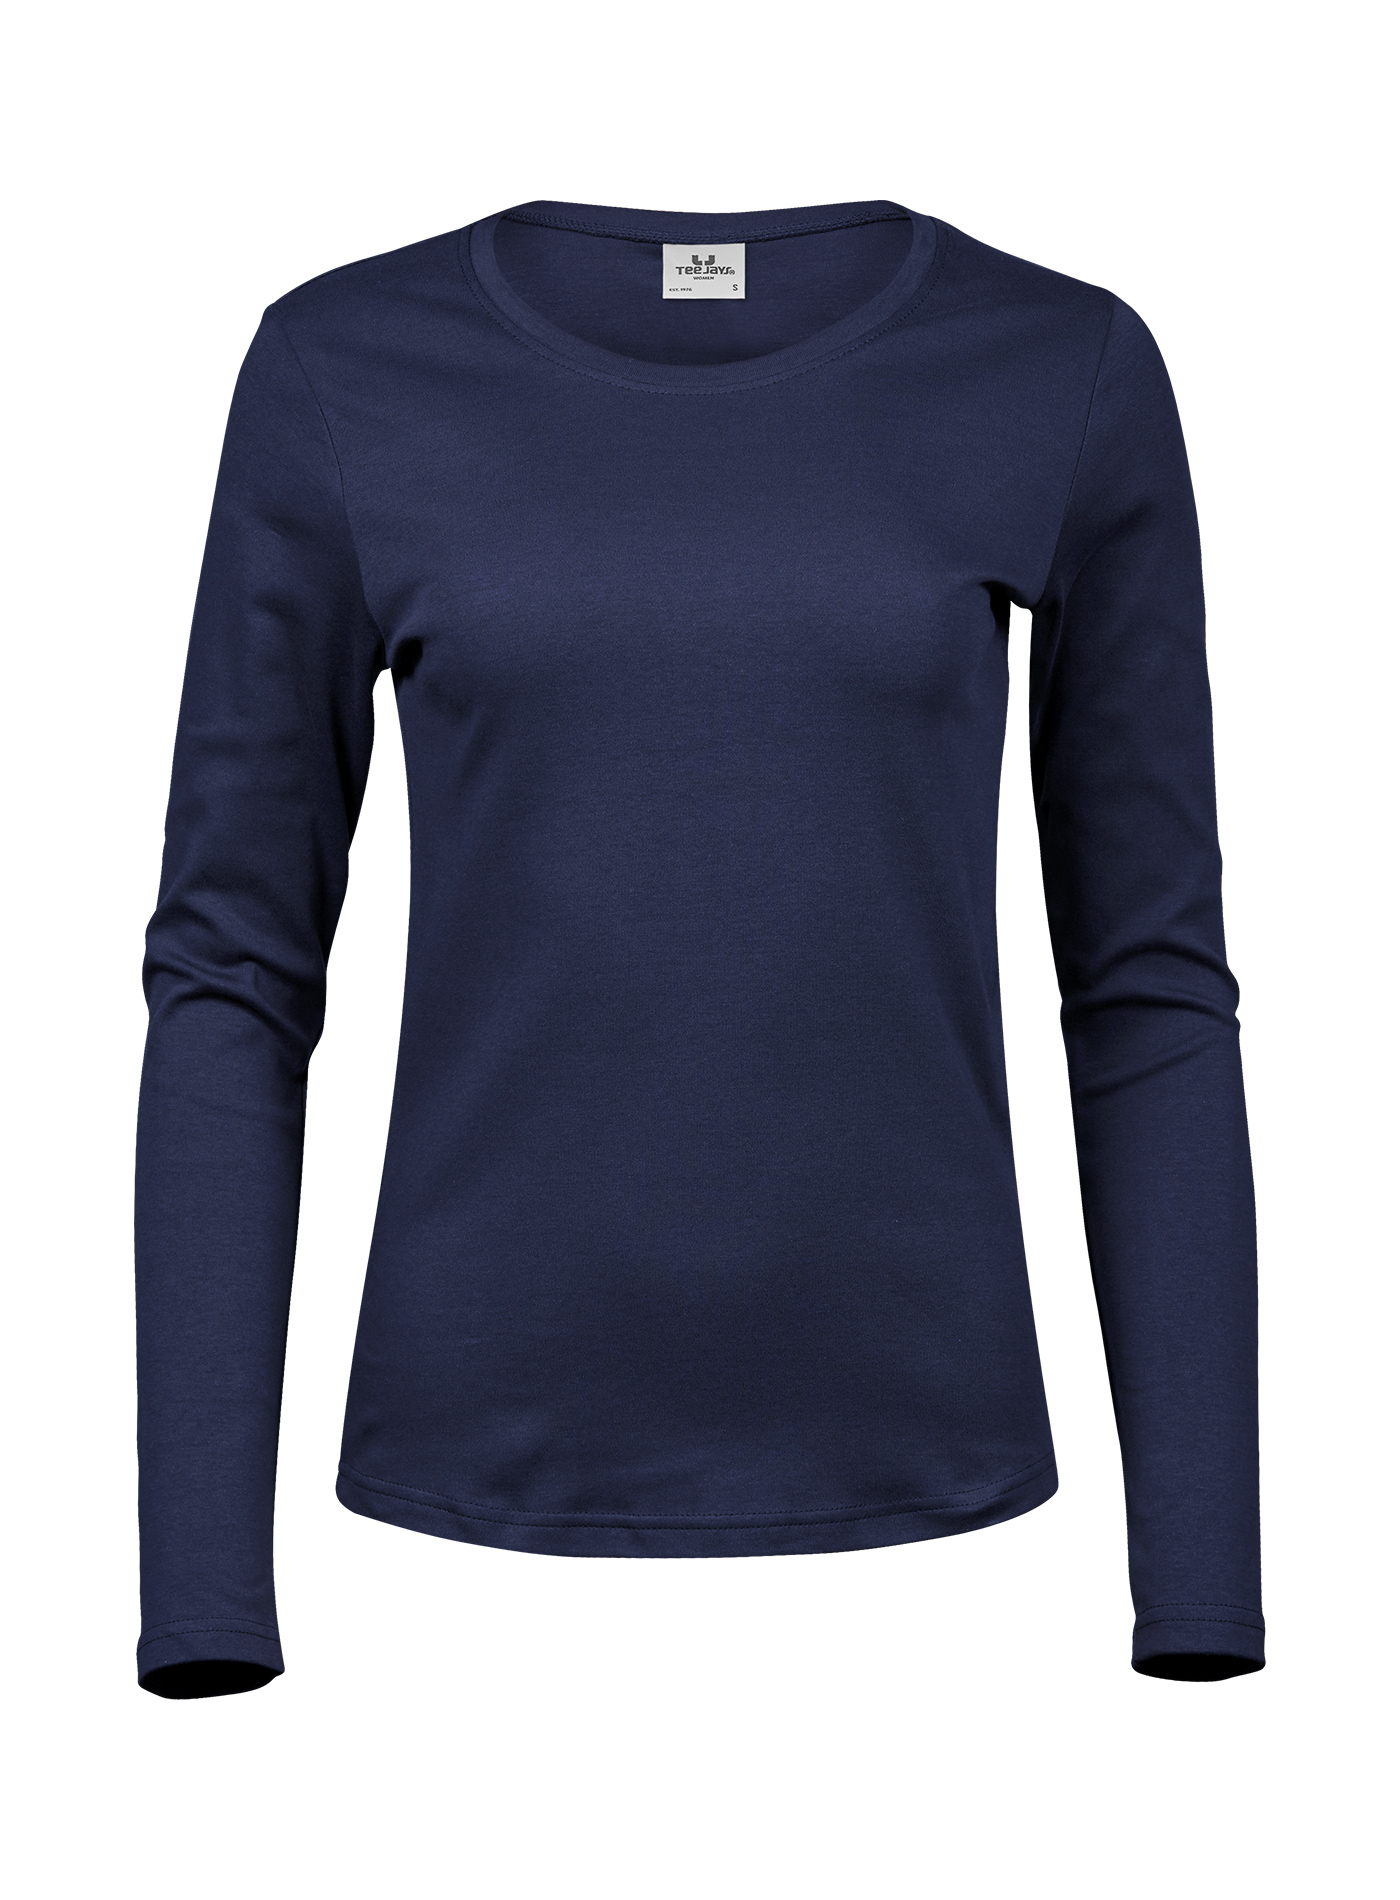 Dámské tričko s dlouhými rukávy Tee Jays Interlock - Námořní modrá S